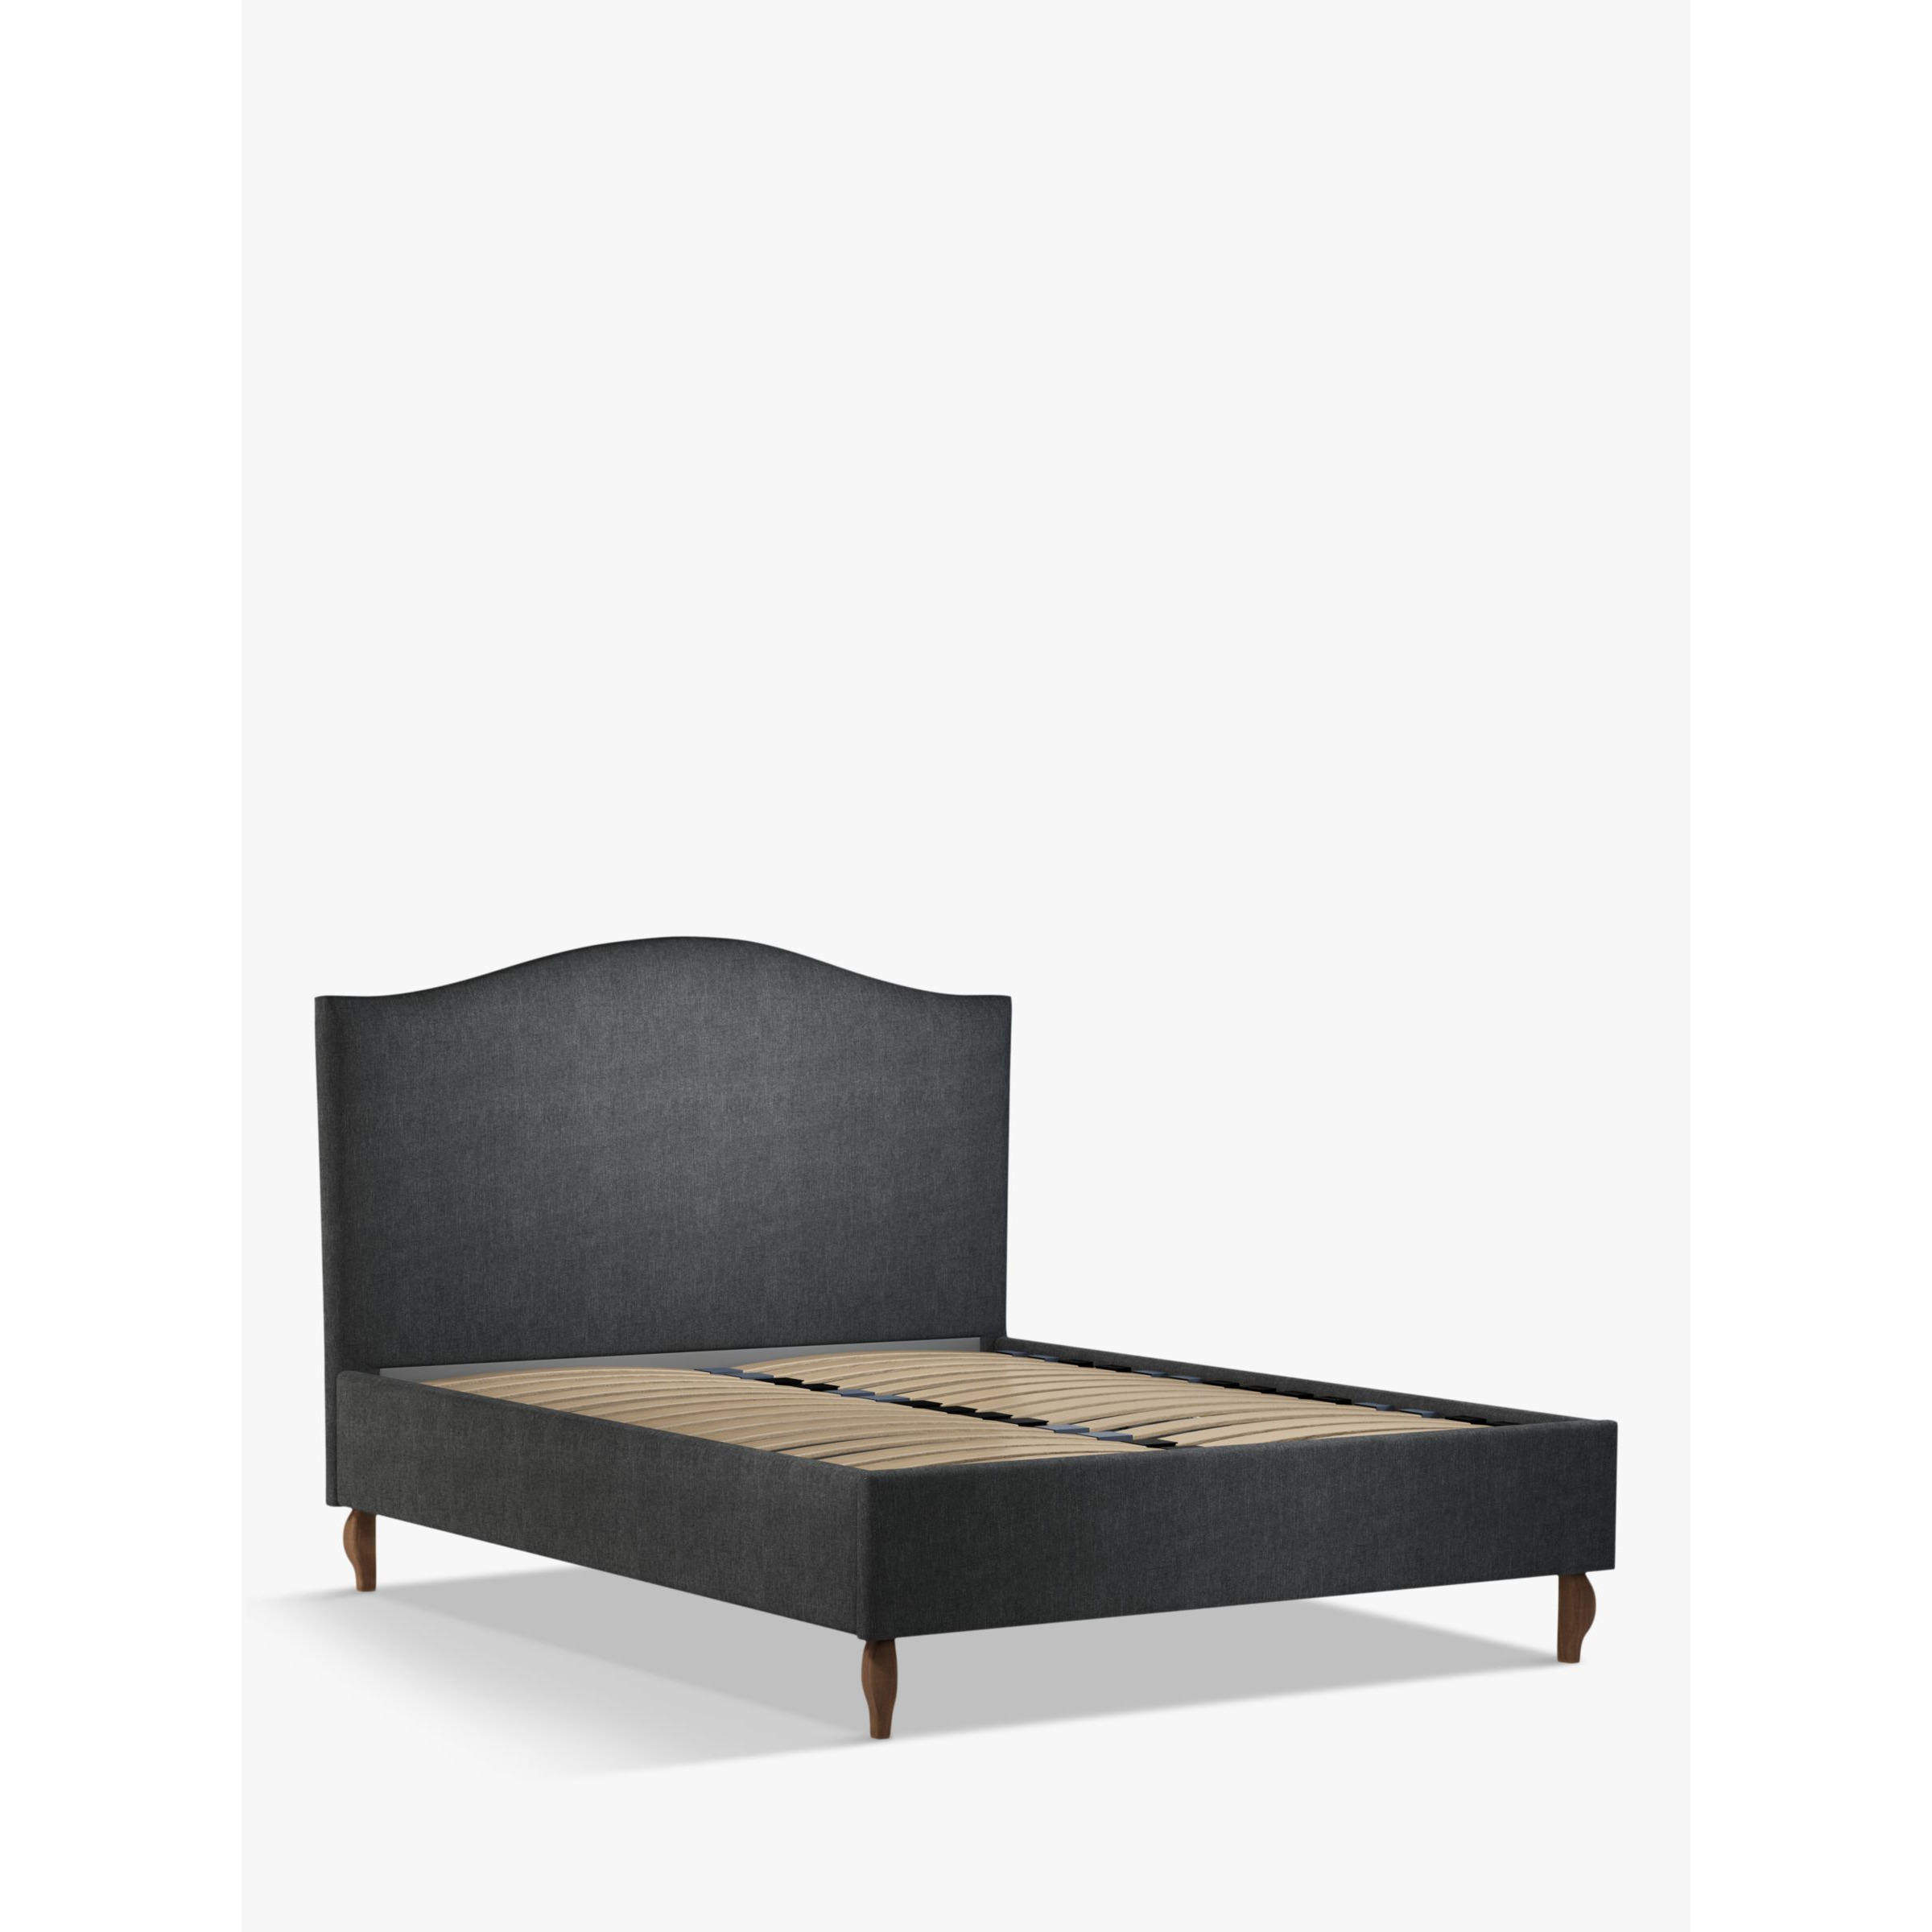 John Lewis Charlotte Upholstered Bed Frame, King Size - image 1